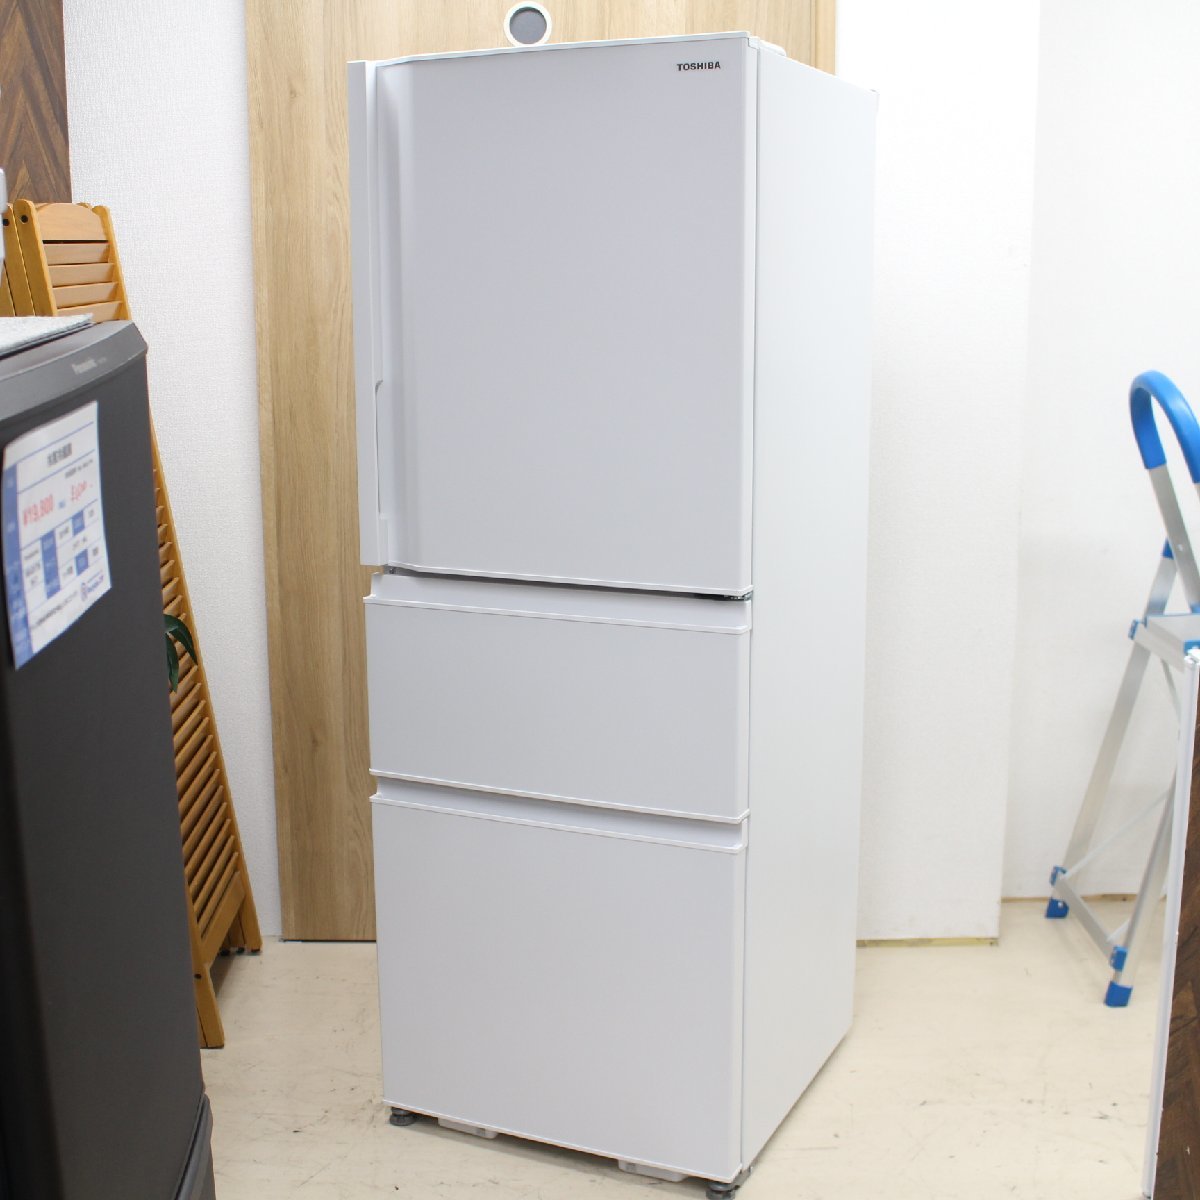 東京都調布市にて 東芝 冷凍冷蔵庫 GR-U33SC(WU) 2022年製 を出張買取させて頂きました。